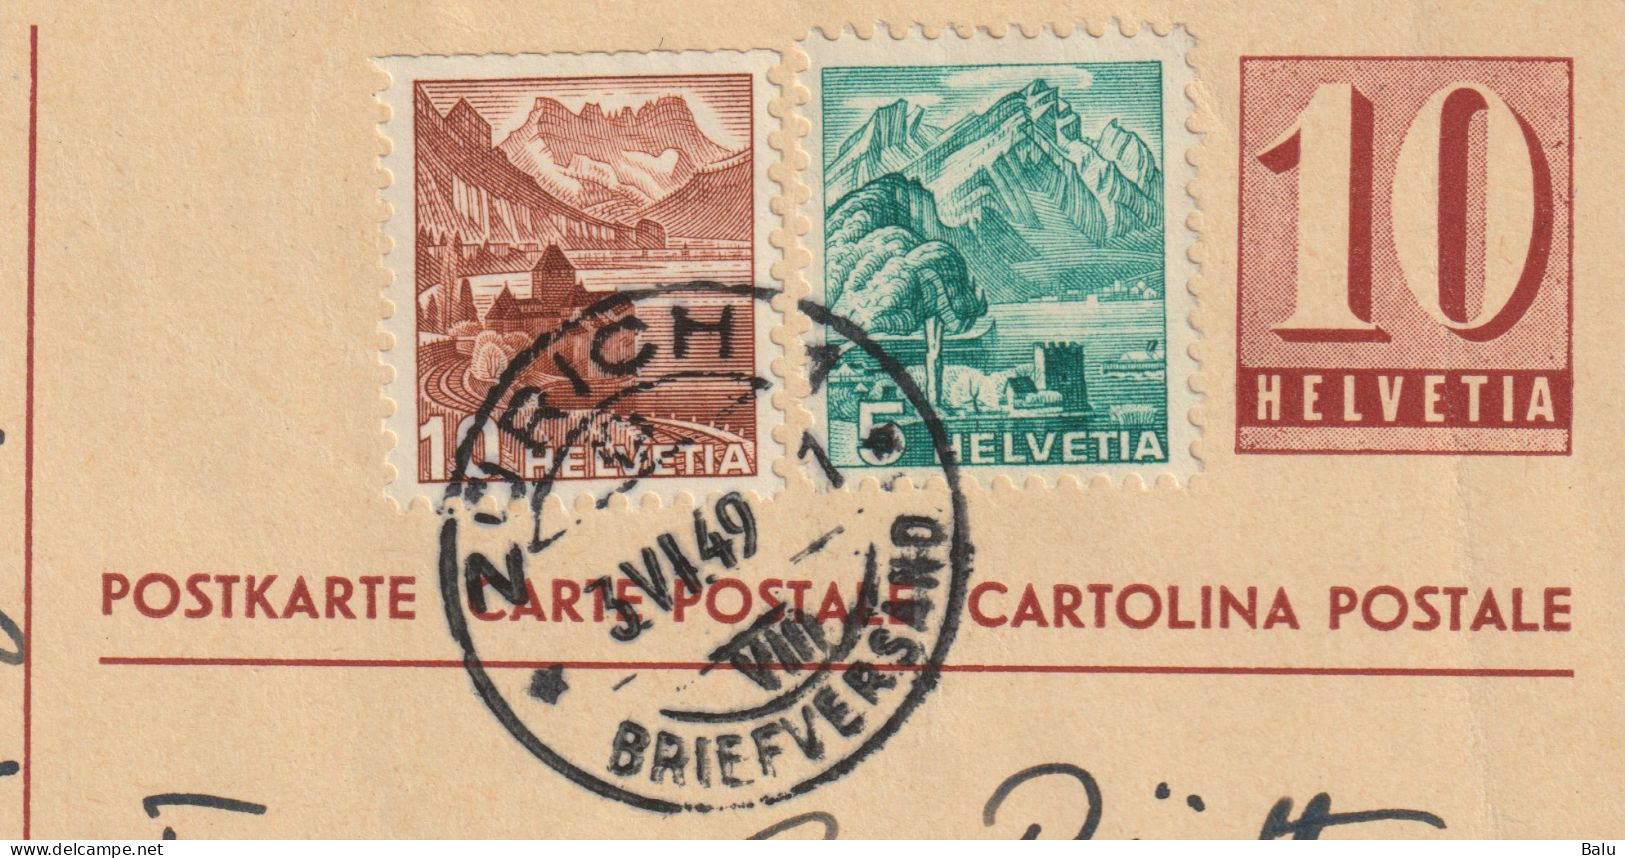 Schweiz Ganzsachen Postkarte Ziffer 10 C. Zürich 1949 Mit 2 Zusatzfrankaturen 5 + 10c., 2 Scans, Entier Postal - Ganzsachen